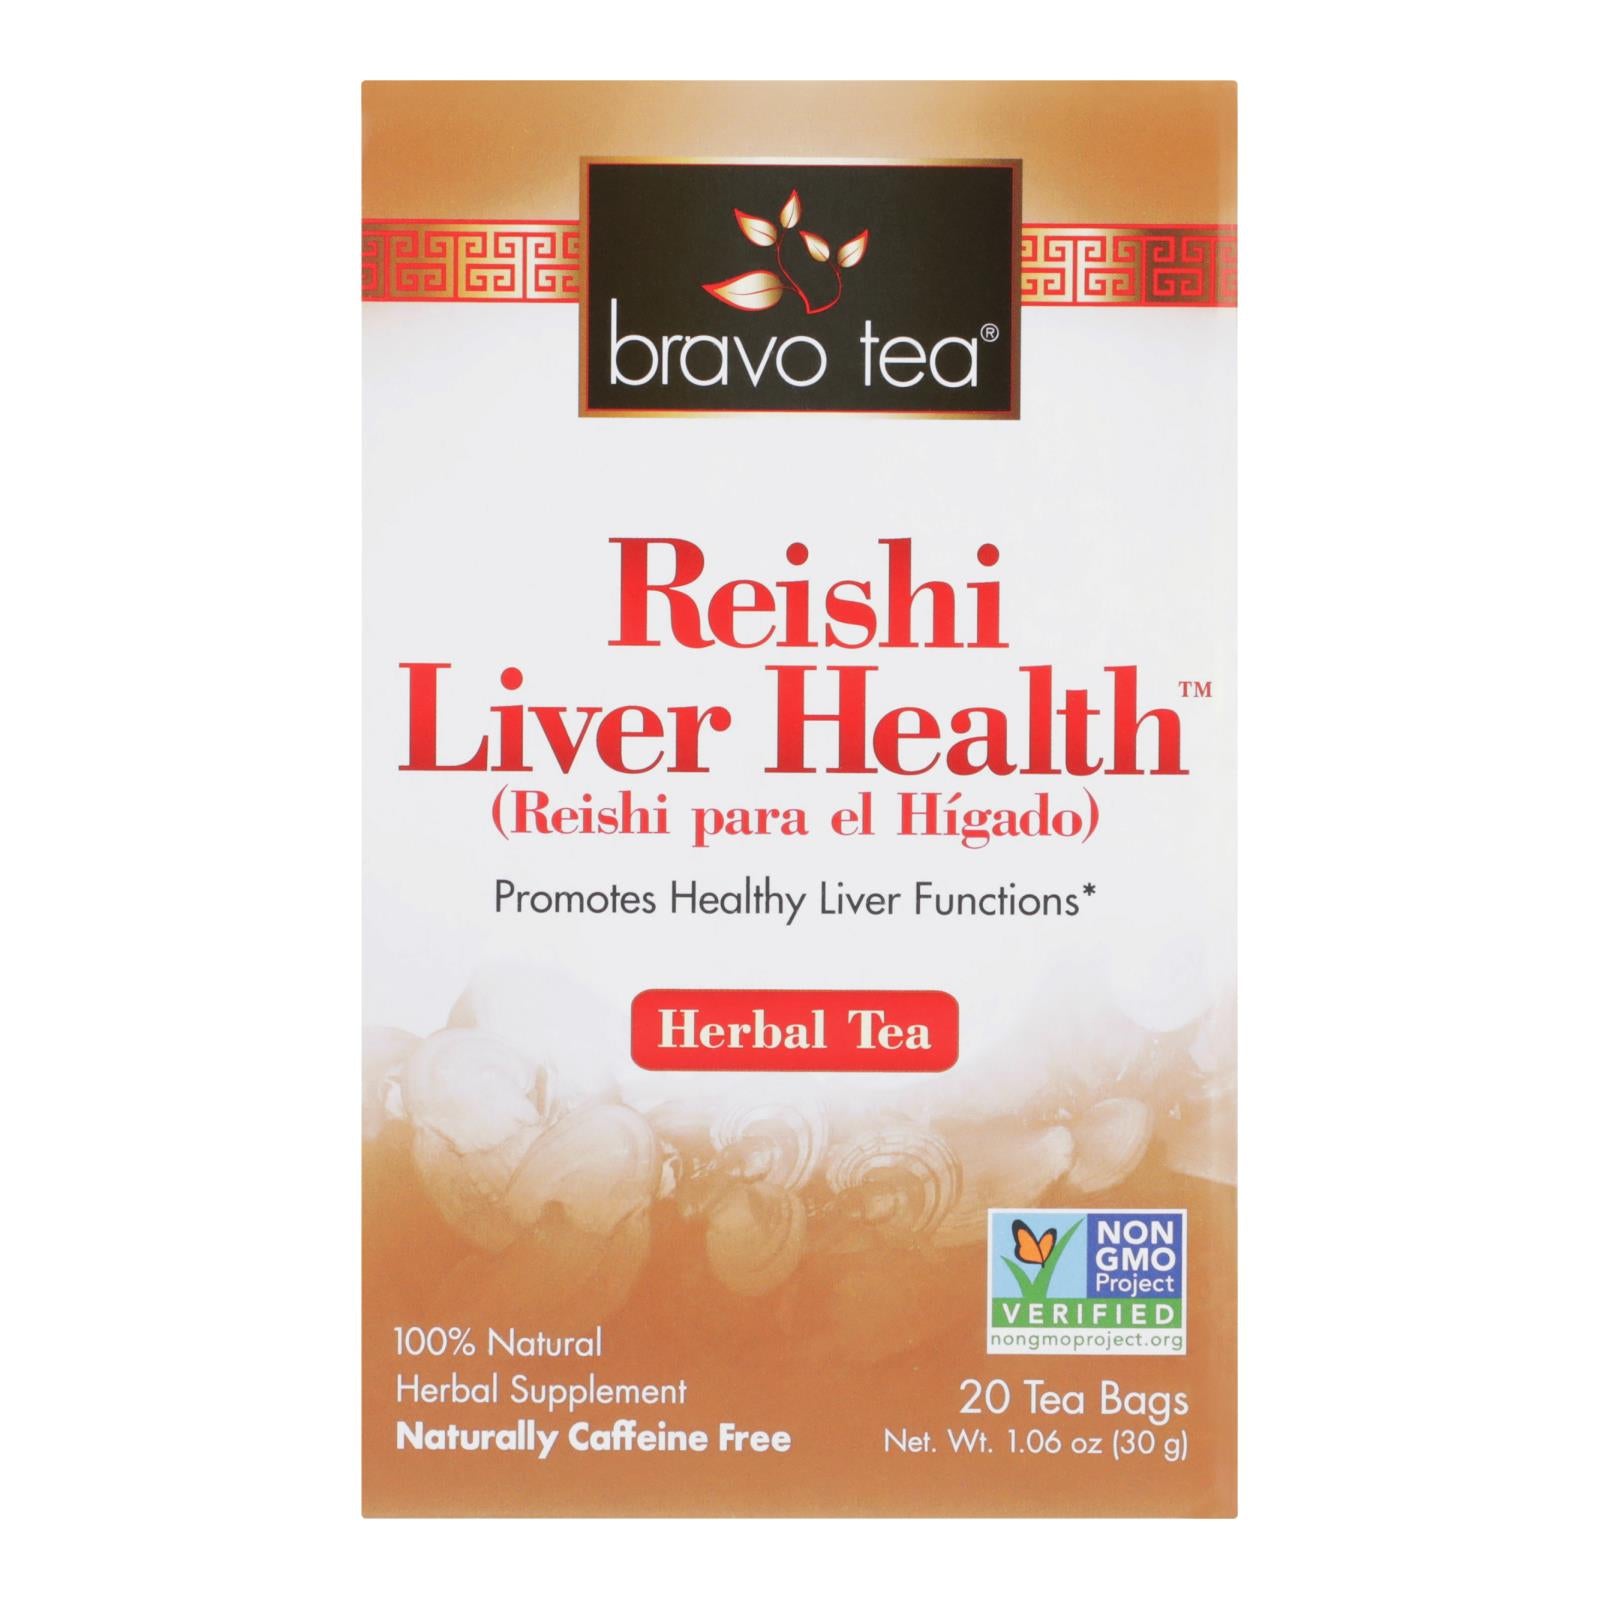 Bravo Teas And Herbs - Tea - Reishi Liver Health - 20 Bag